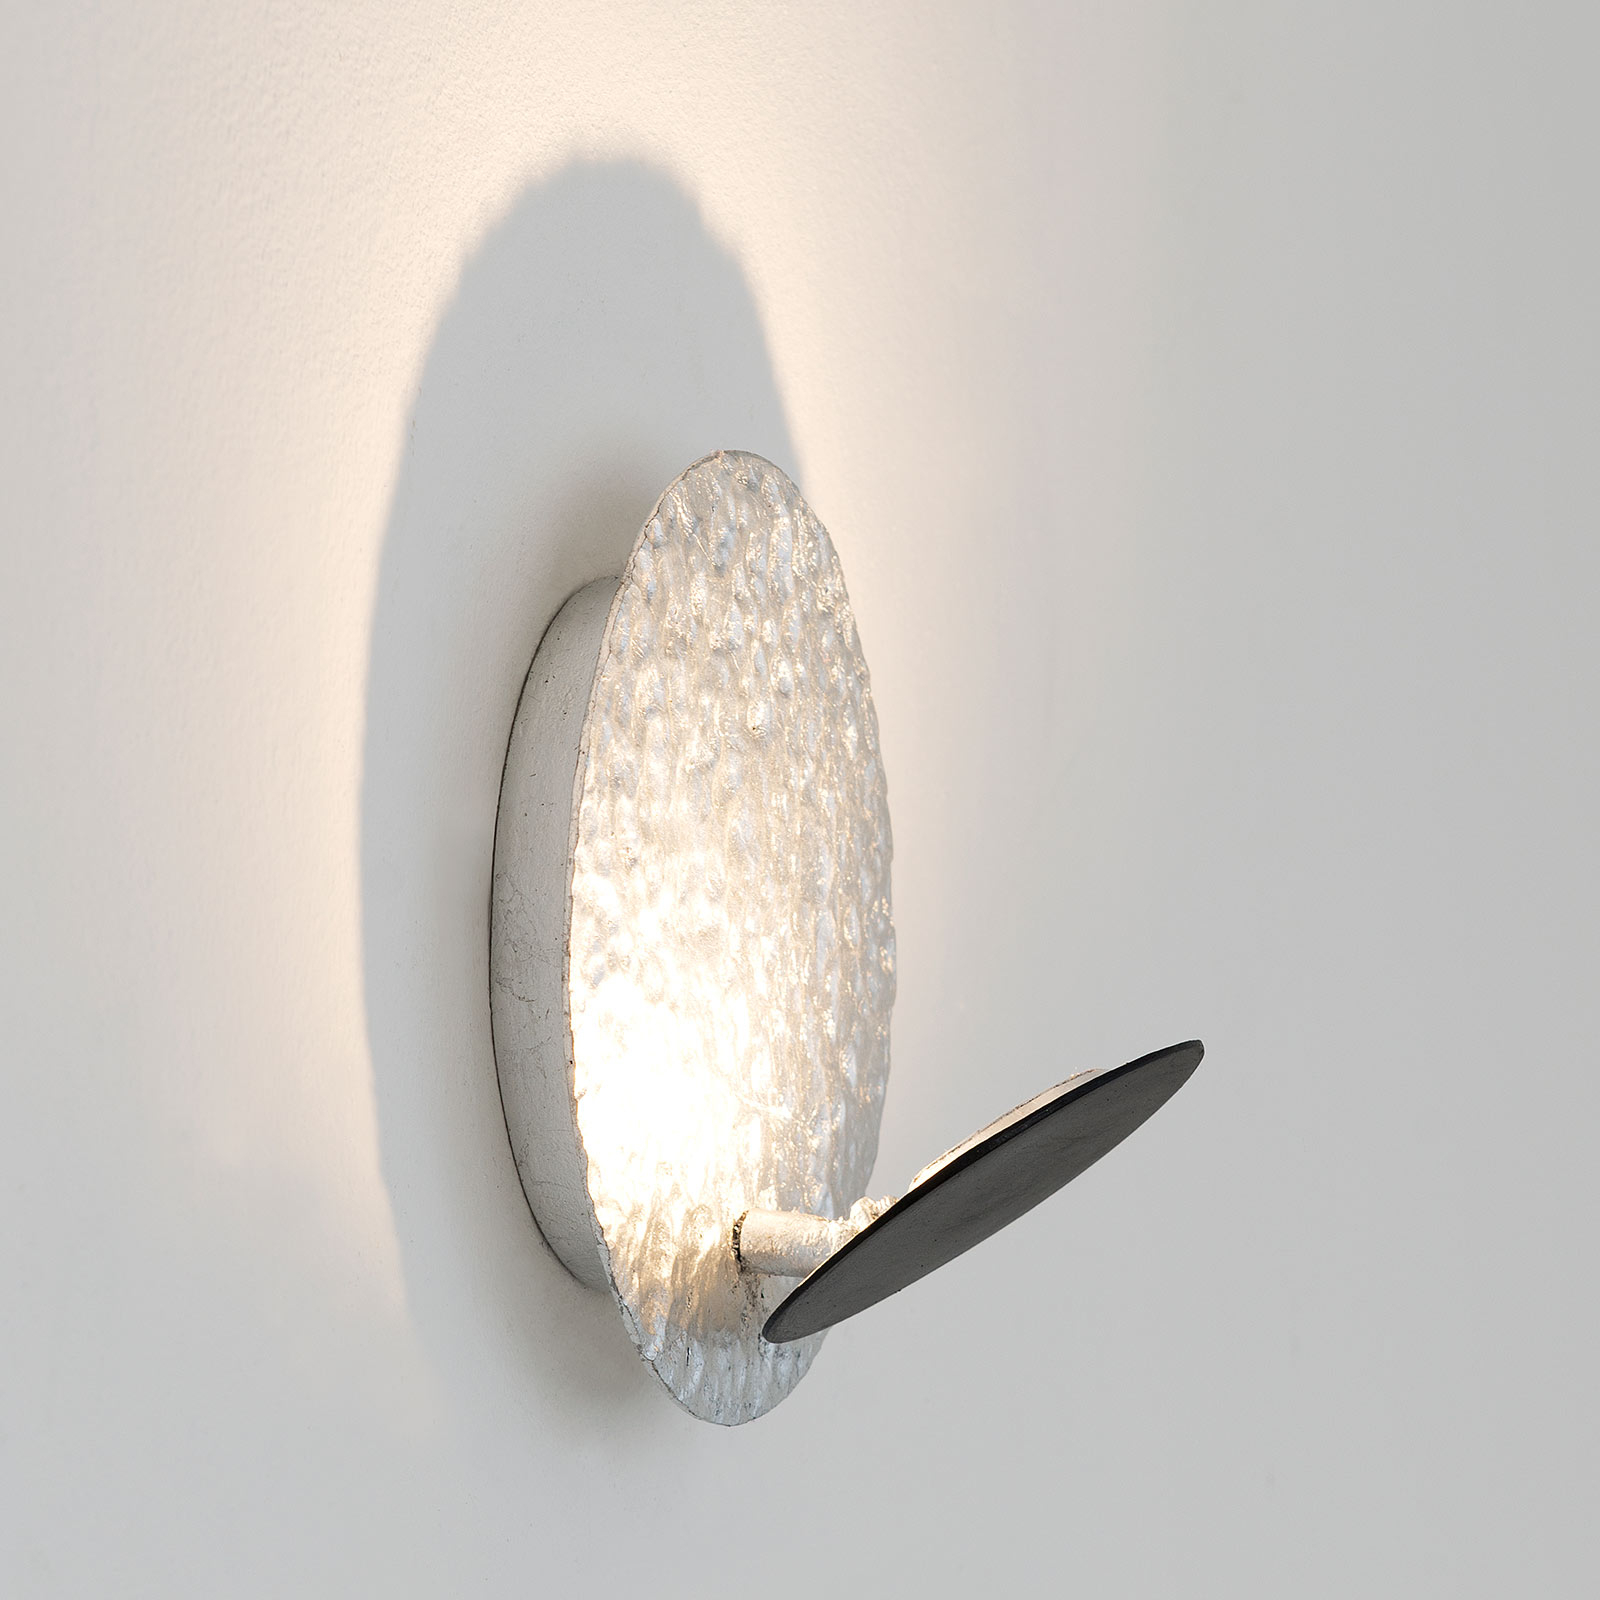 LED nástěnné světlo Infinity, stříbrná, Ø 20 cm